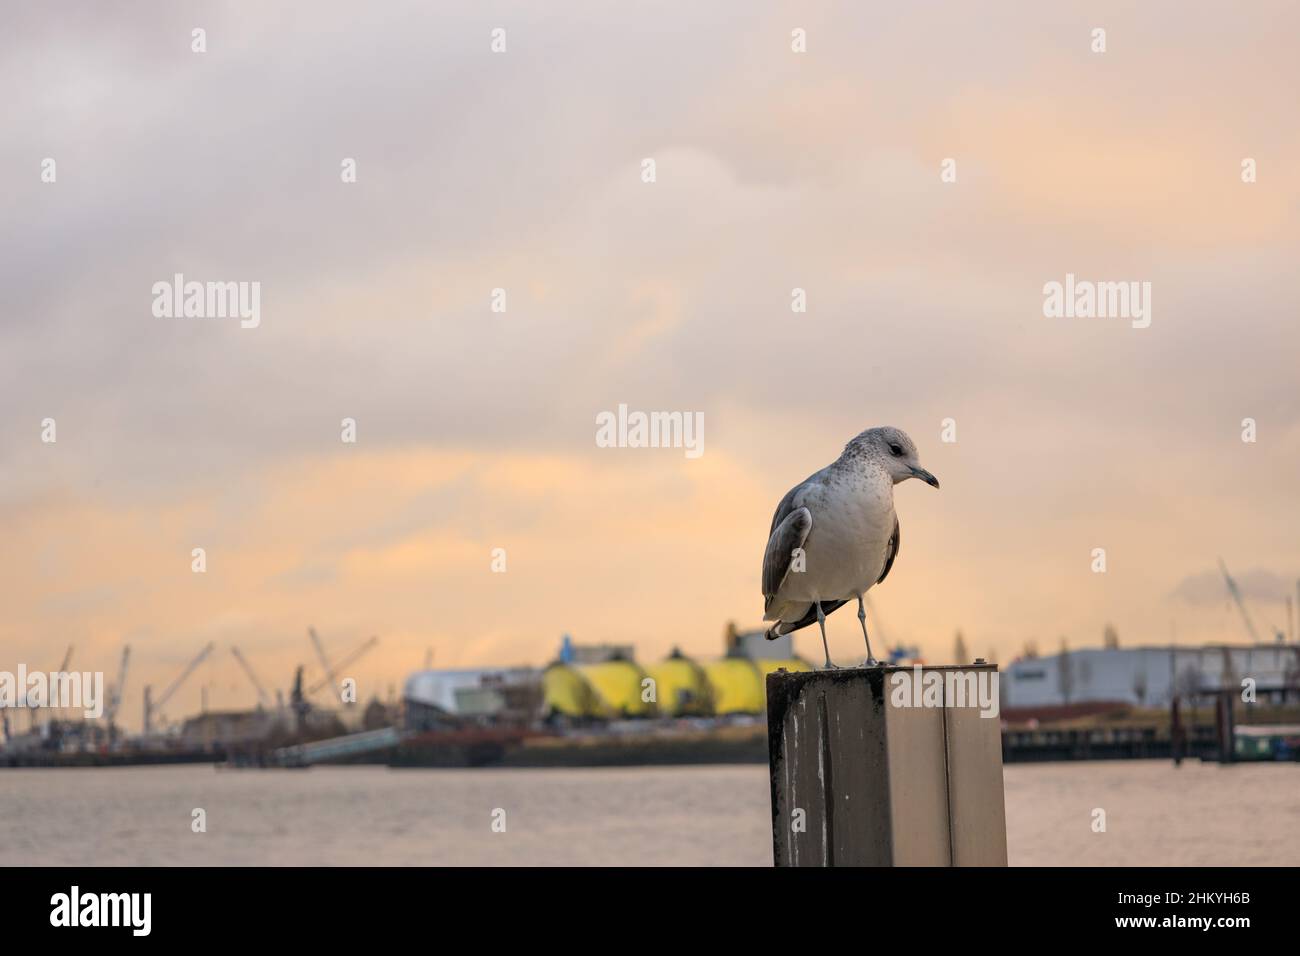 Germany, Hamburg Harbor - sitting gull in winter (Chroicocephalus ridibundes) Stock Photo